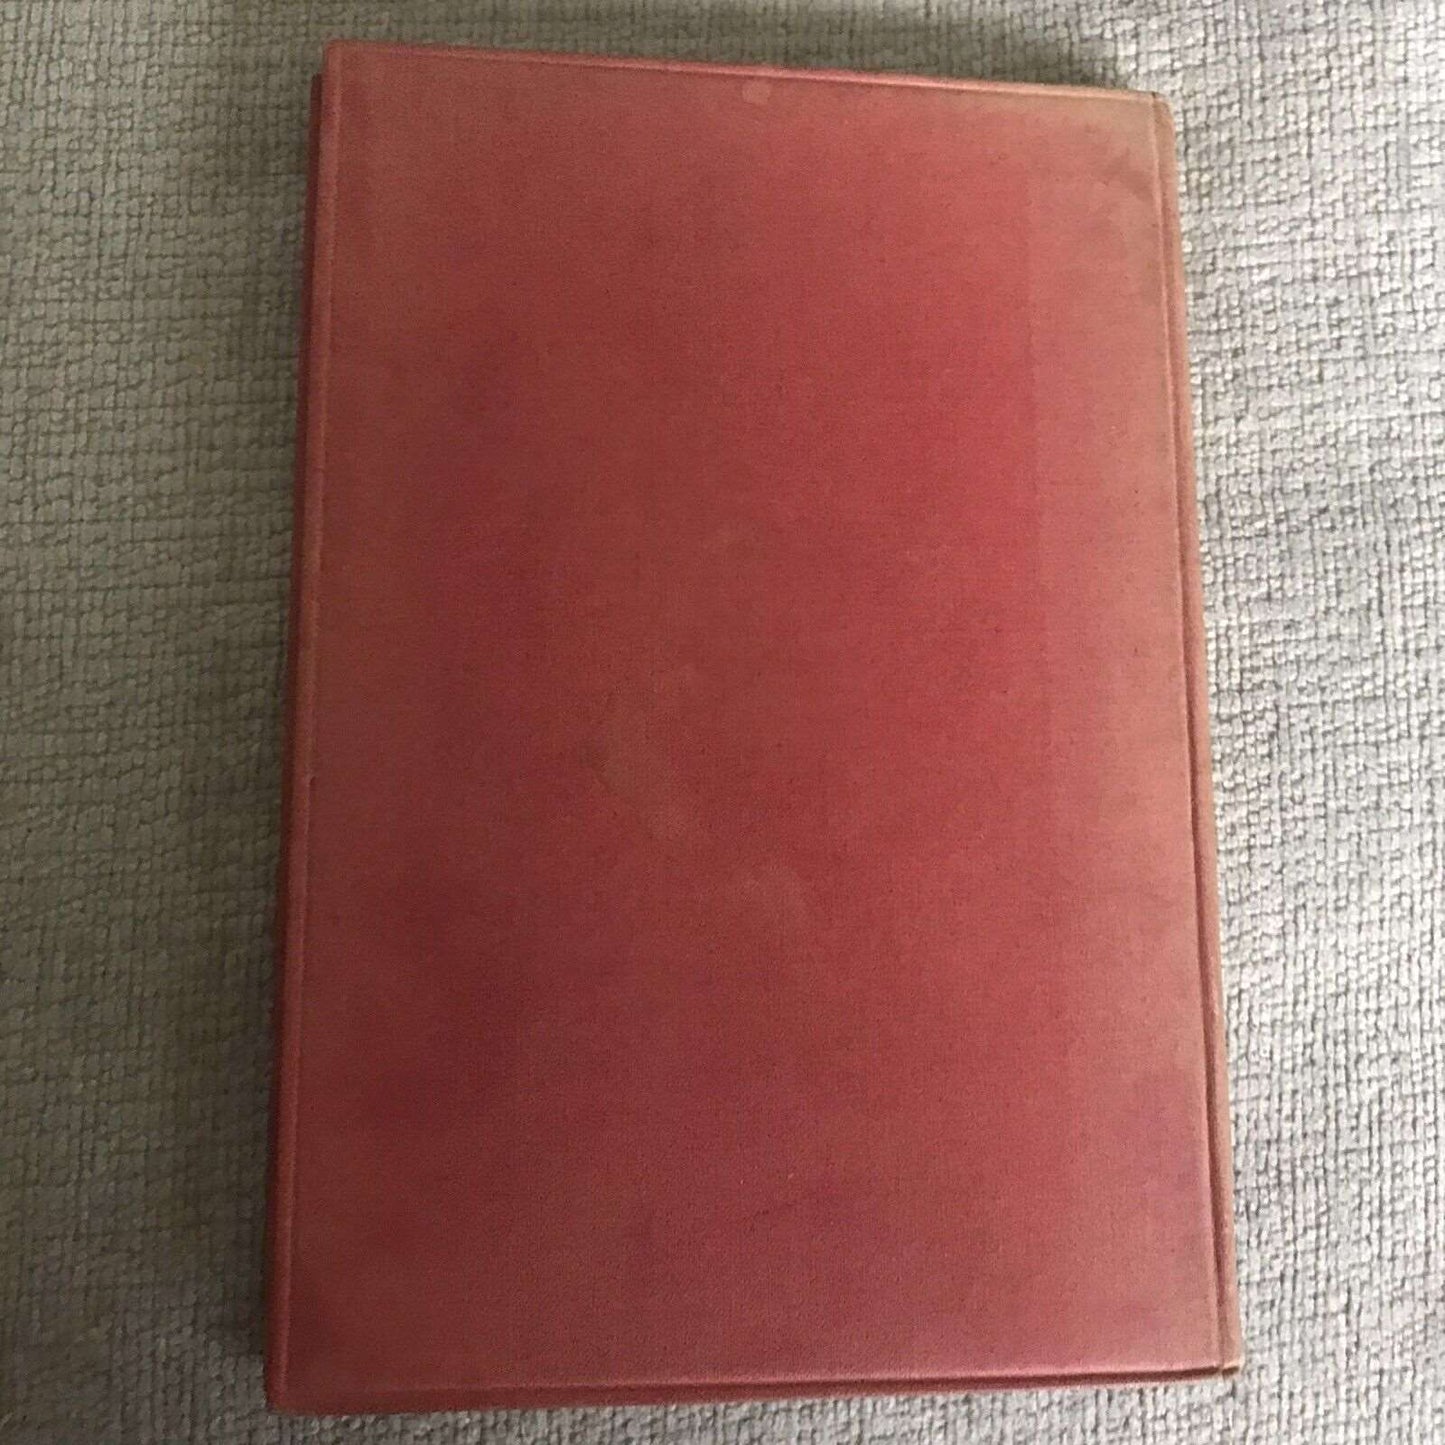 1924 The Little Children's Bible / Alexander Nairne. Cambridge University Press Honeyburn Books (UK)